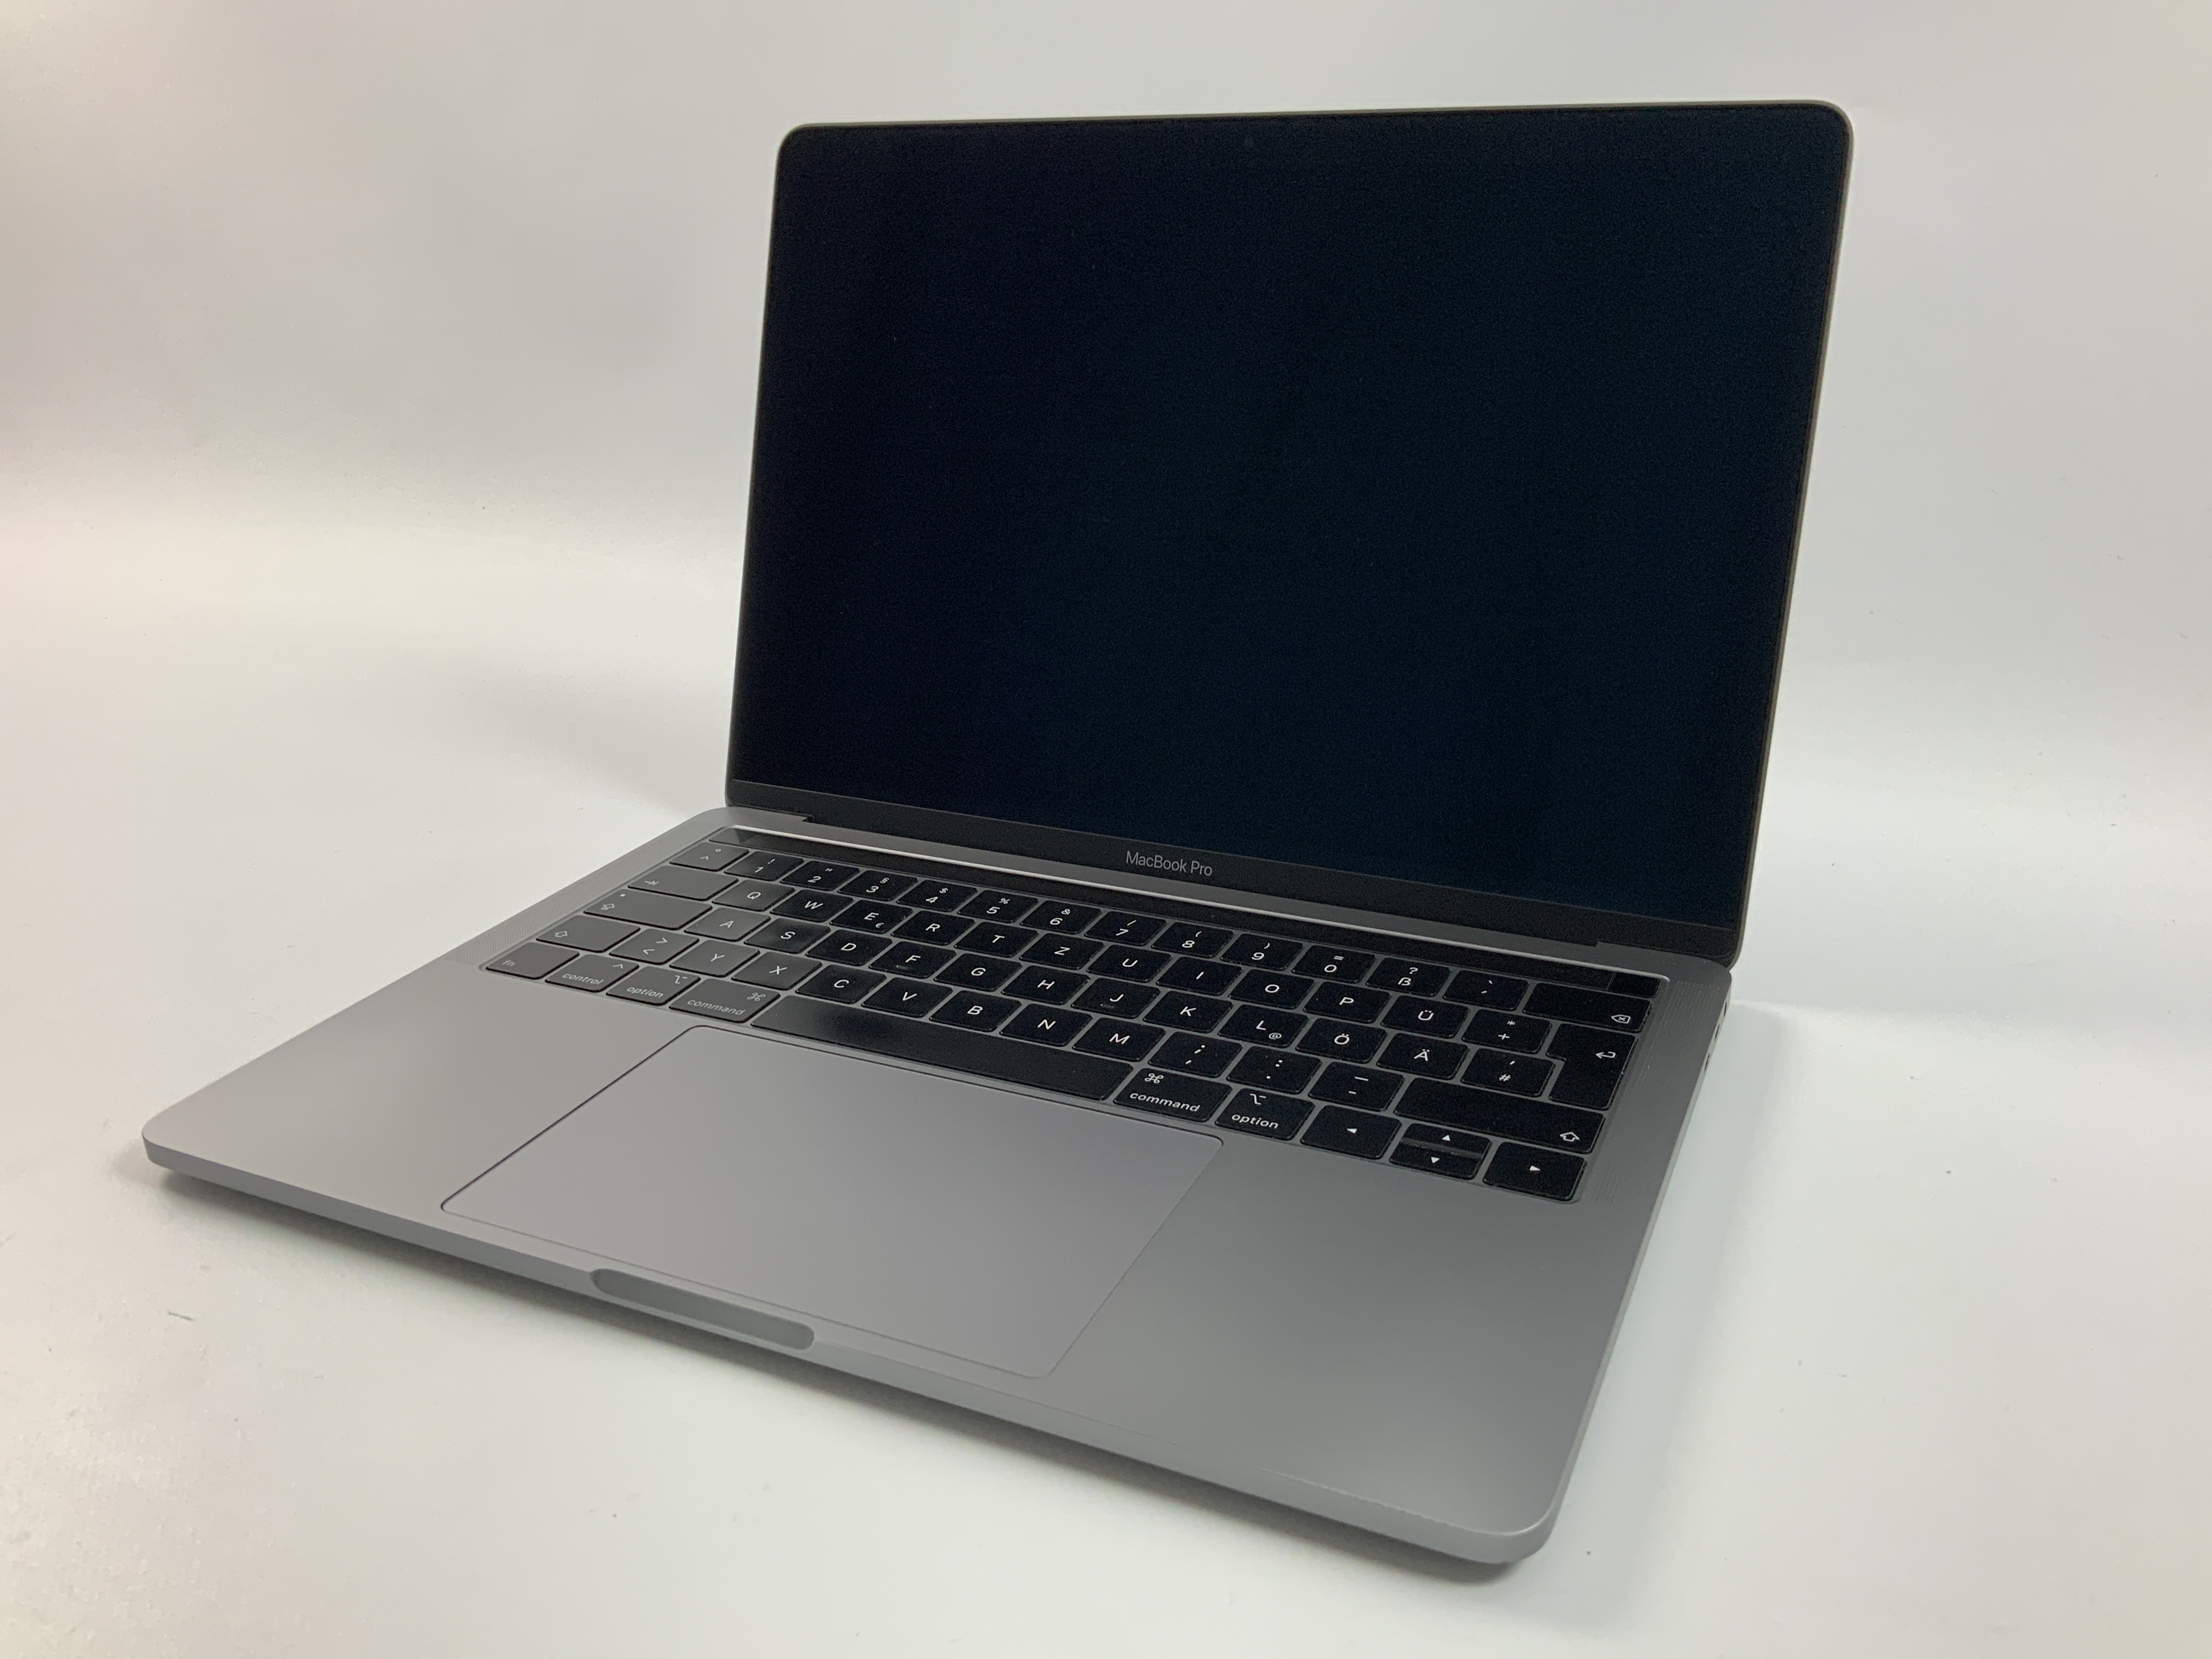 MacBook Pro 13" 4TBT Mid 2019 (Intel Quad-Core i5 2.4 GHz 16 GB RAM 1 TB SSD), Space Gray, Intel Quad-Core i5 2.4 GHz, 16 GB RAM, 1 TB SSD, Bild 1